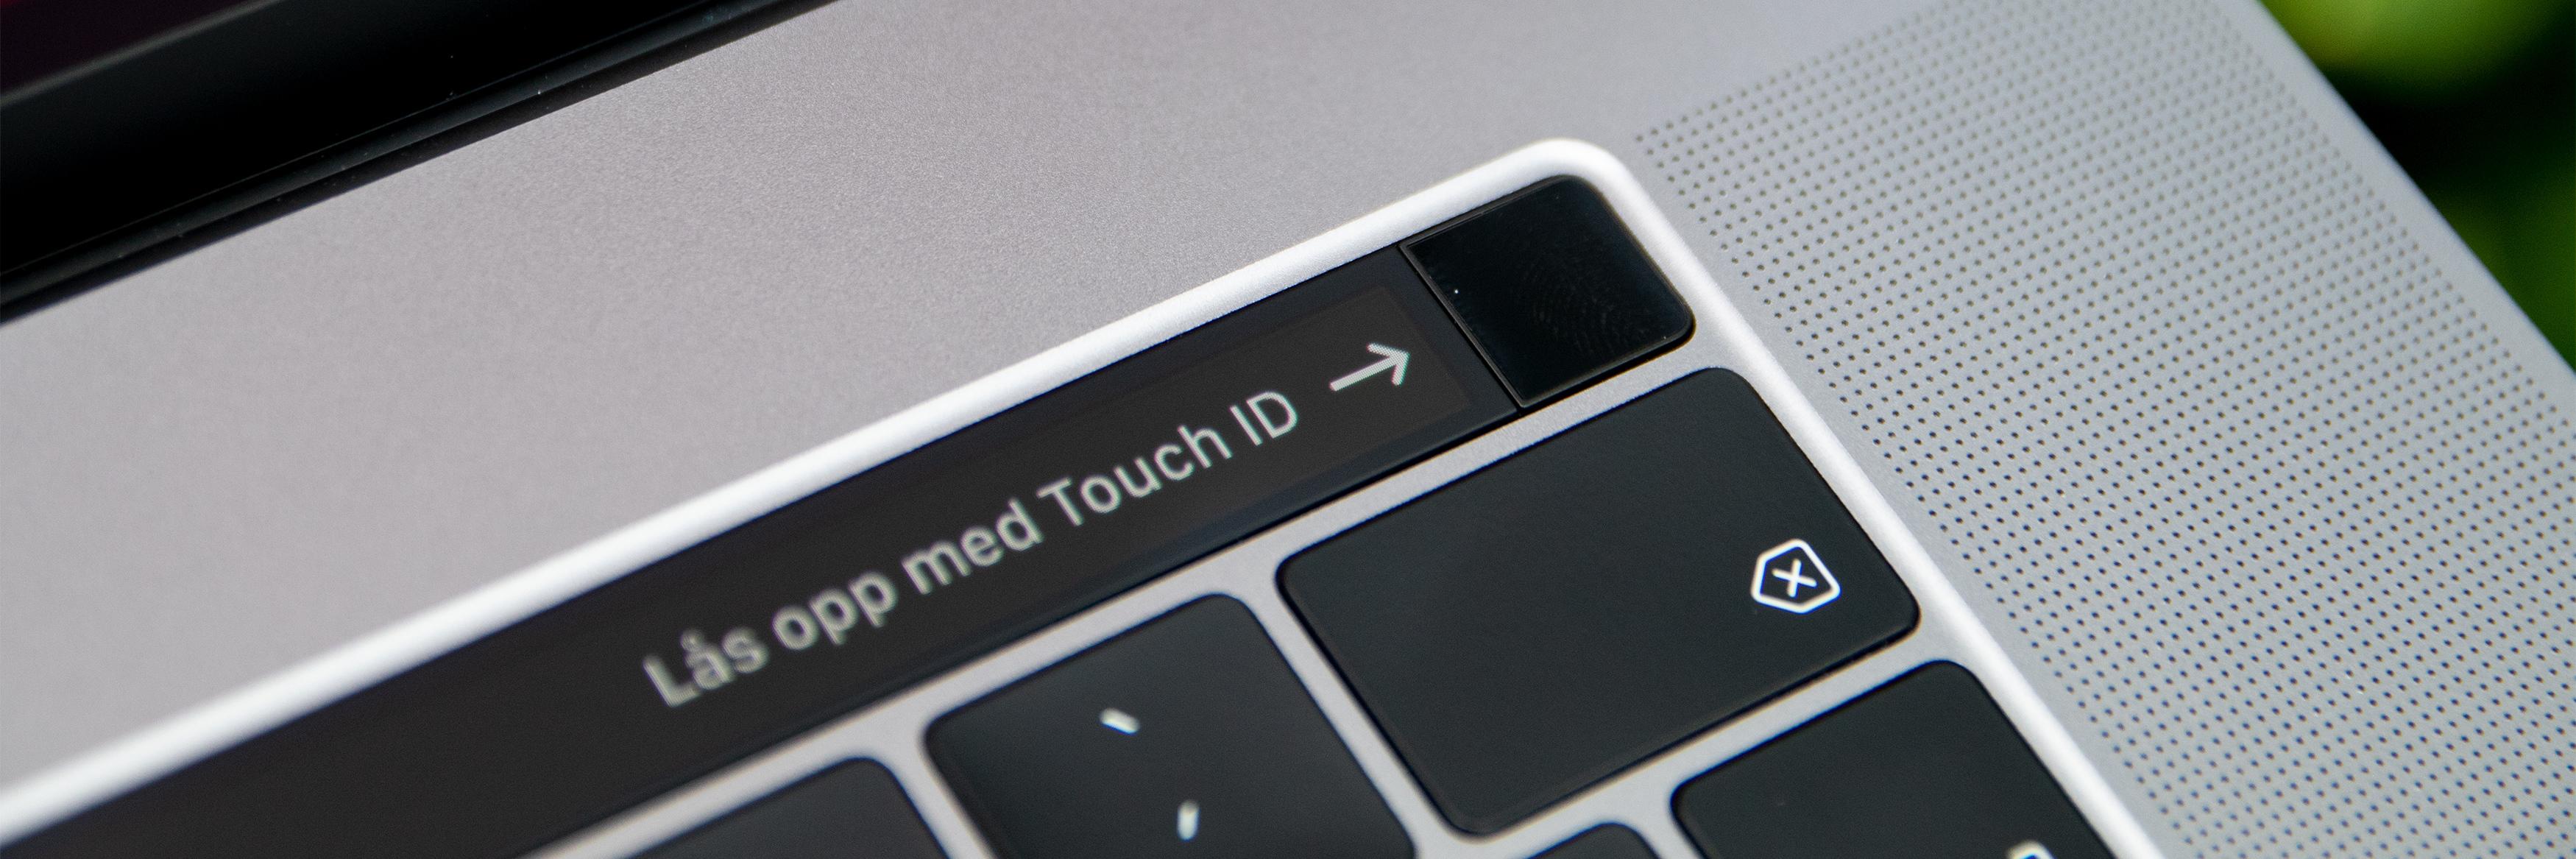 Touch ID lar deg droppe inntasting av passord og utføre kjøp med Apple Pay.